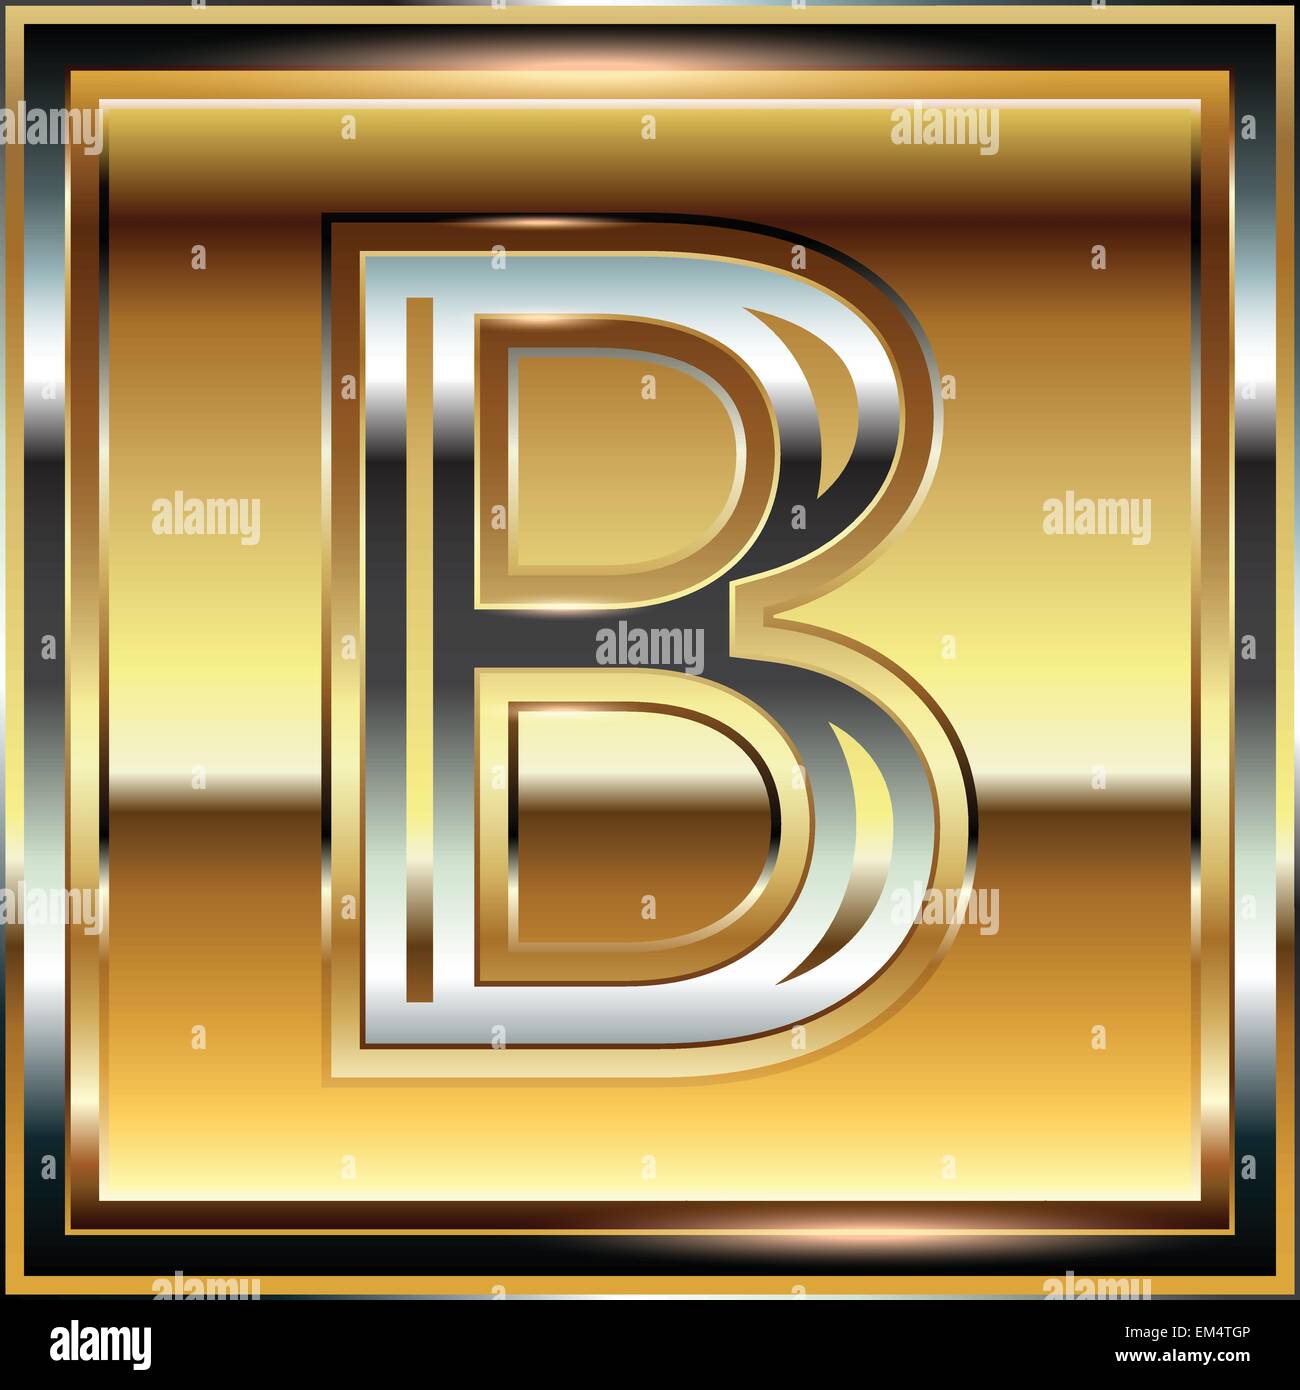 Golden Font illustration LETTER B Stock Vector Image & Art - Alamy